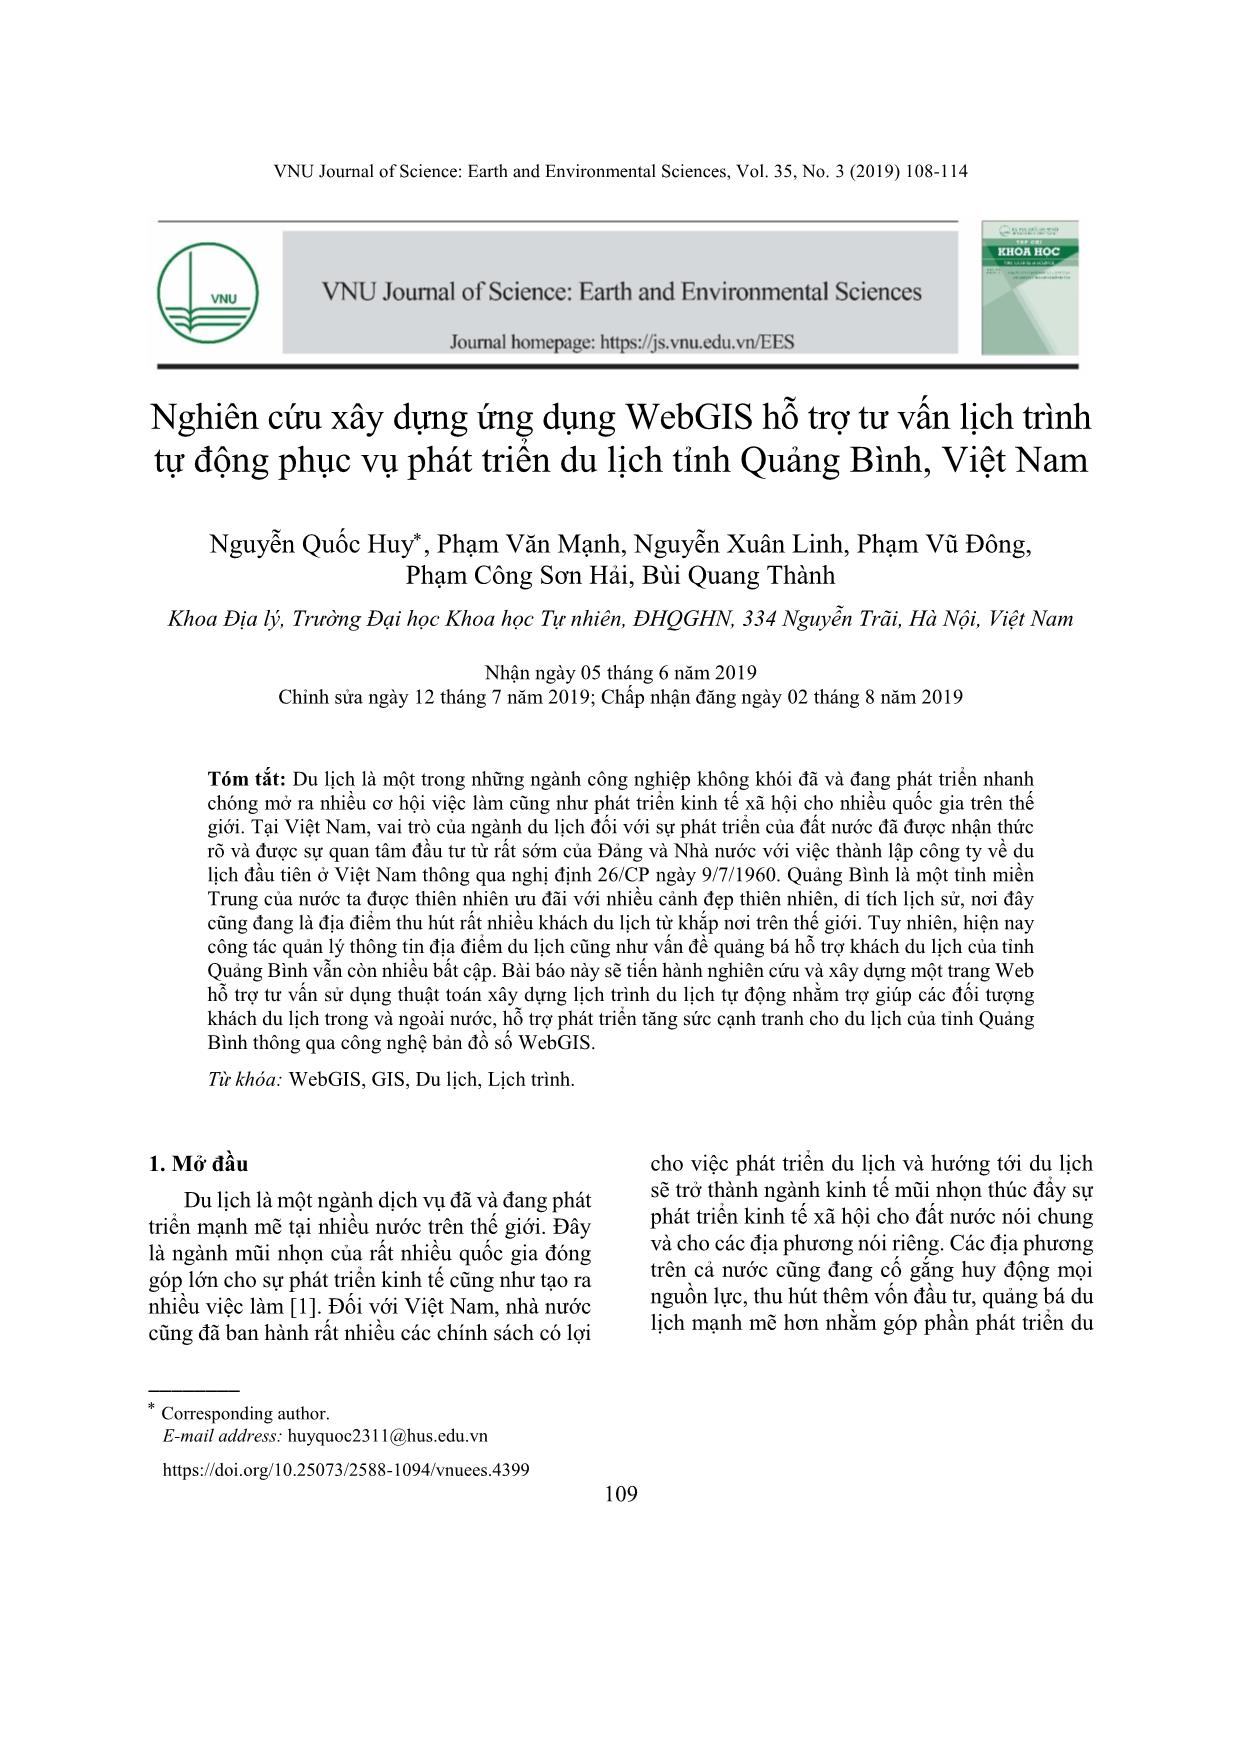 Nghiên cứu xây dựng ứng dụng WebGIS hỗ trợ tư vấn lịch trình tự động phục vụ phát triển du lịch tỉnh Quảng Bình, Việt Nam trang 2